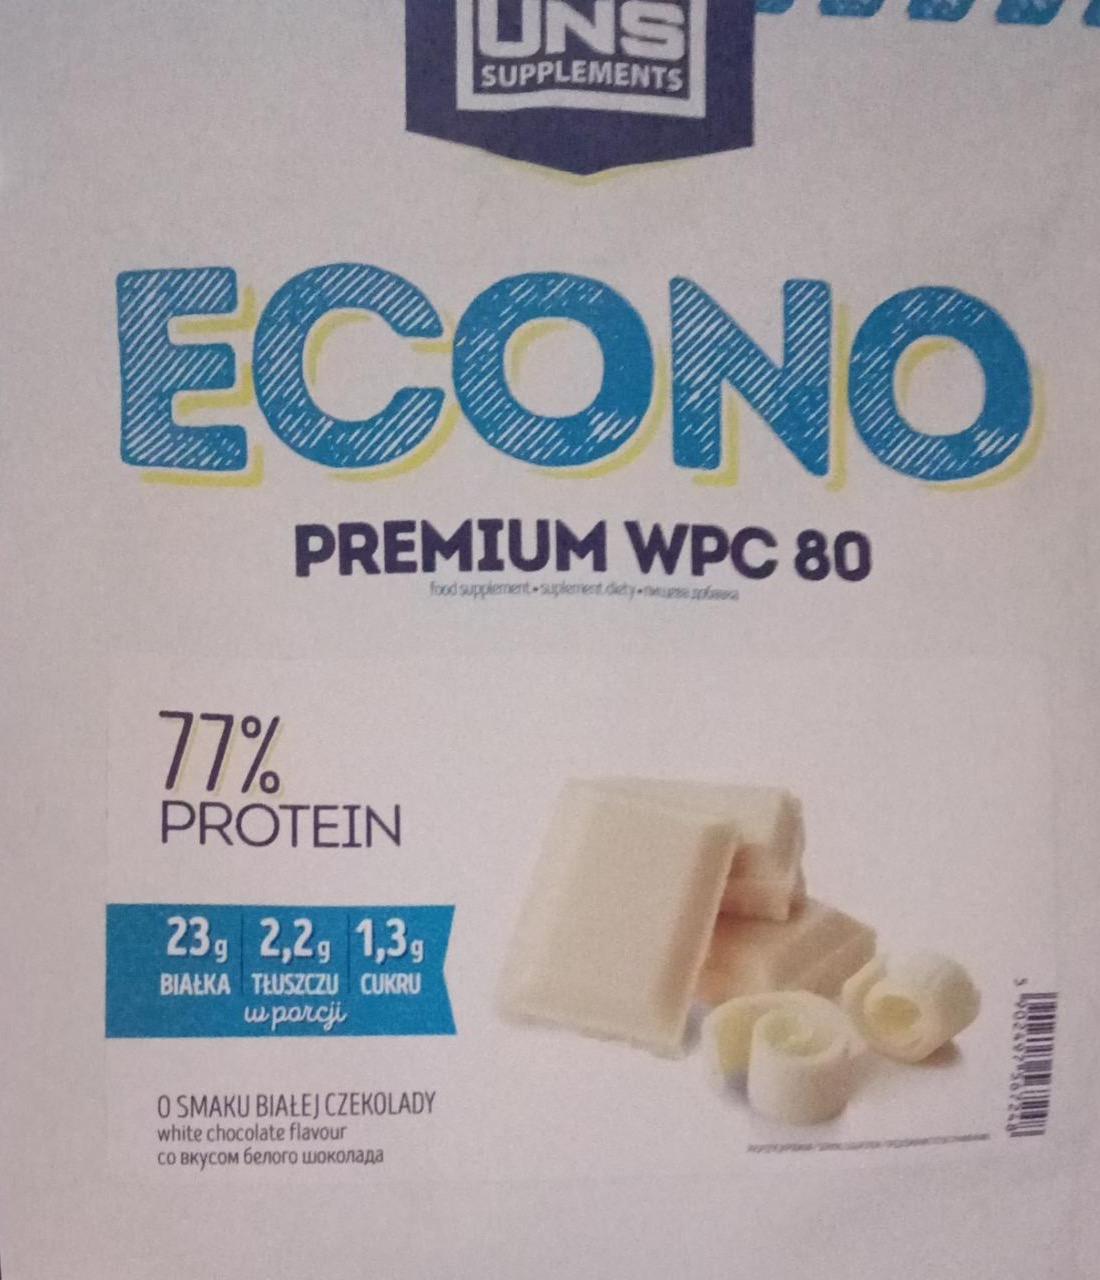 Zdjęcia - Econo premium wpc 80 o smaku białej czekolady UNS supplements